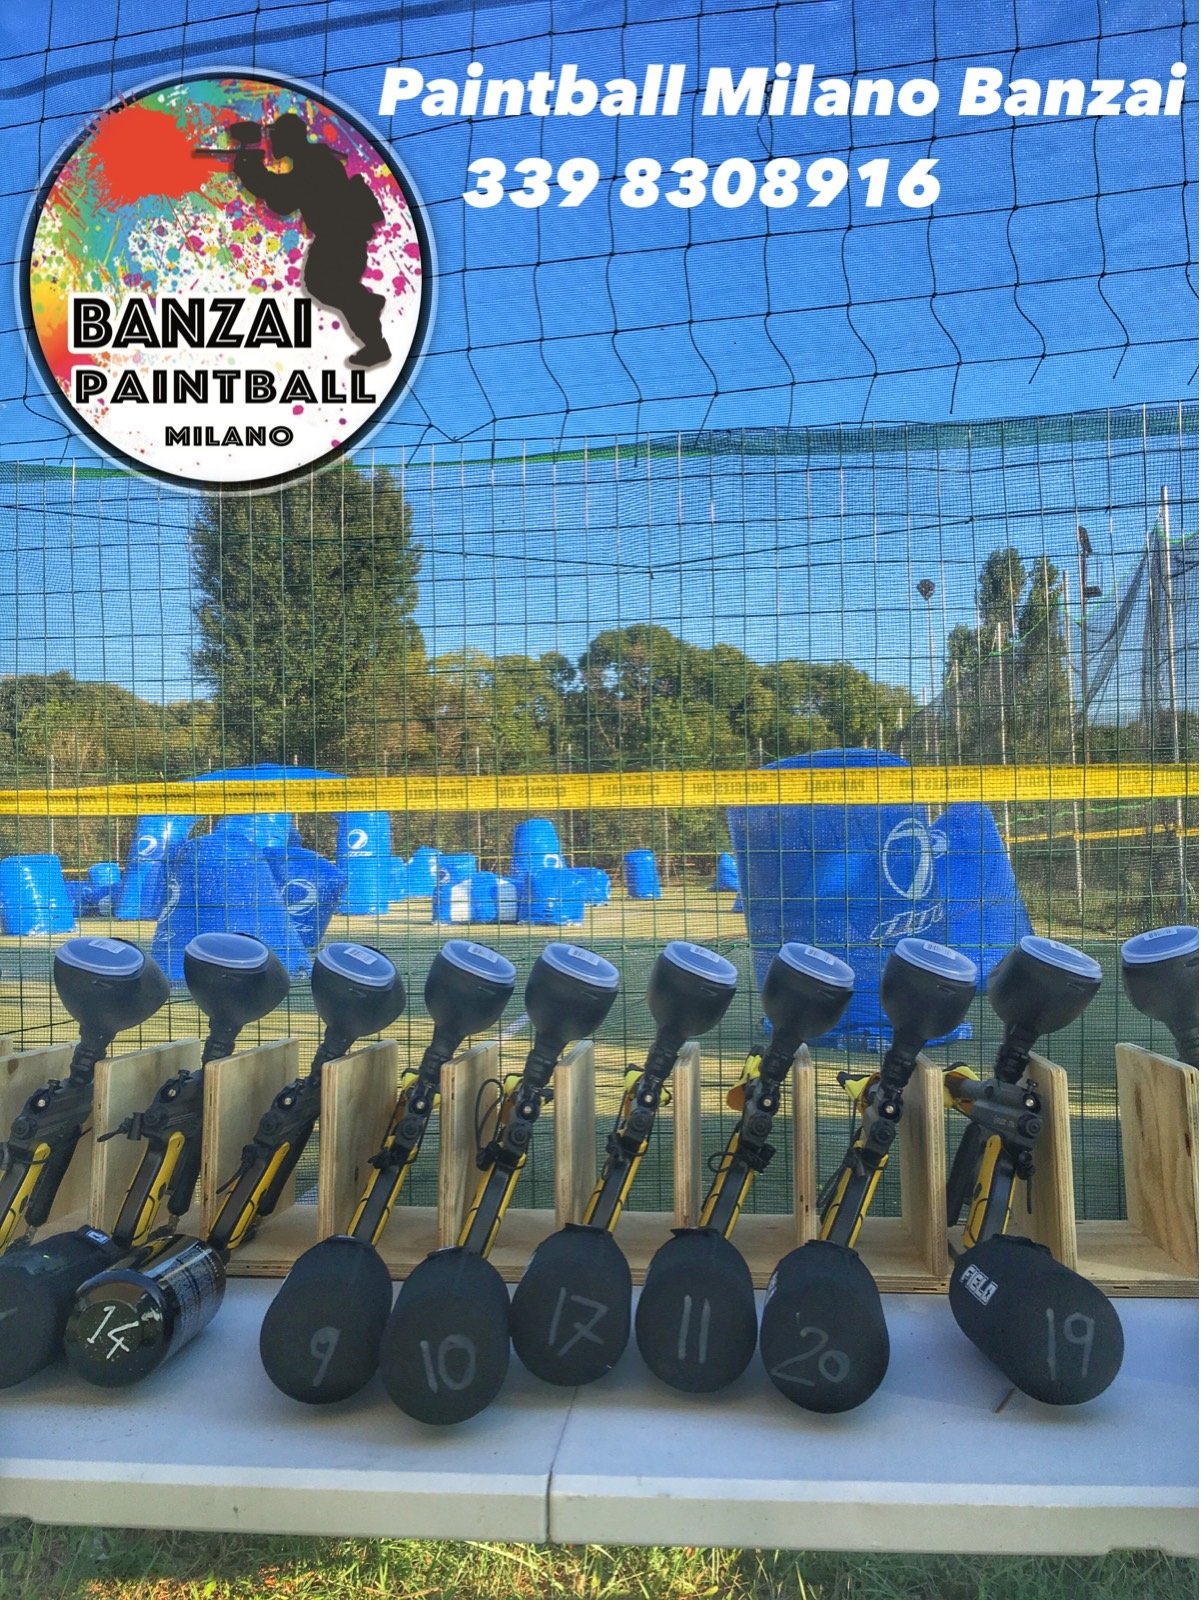 Banzai Paintball